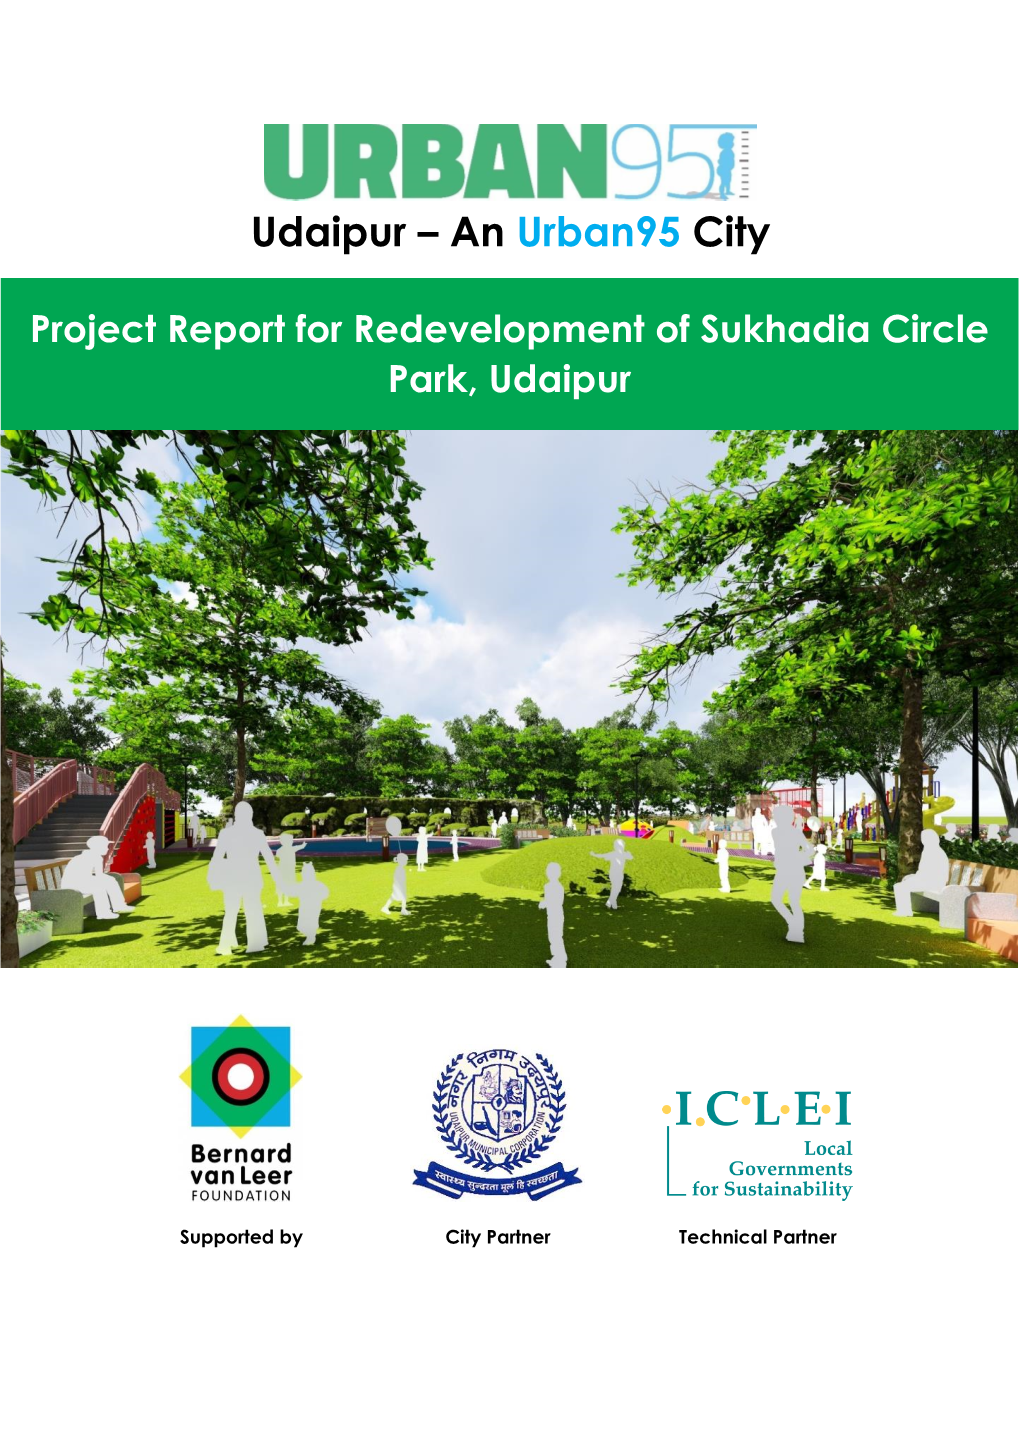 Udaipur – an Urban95 City